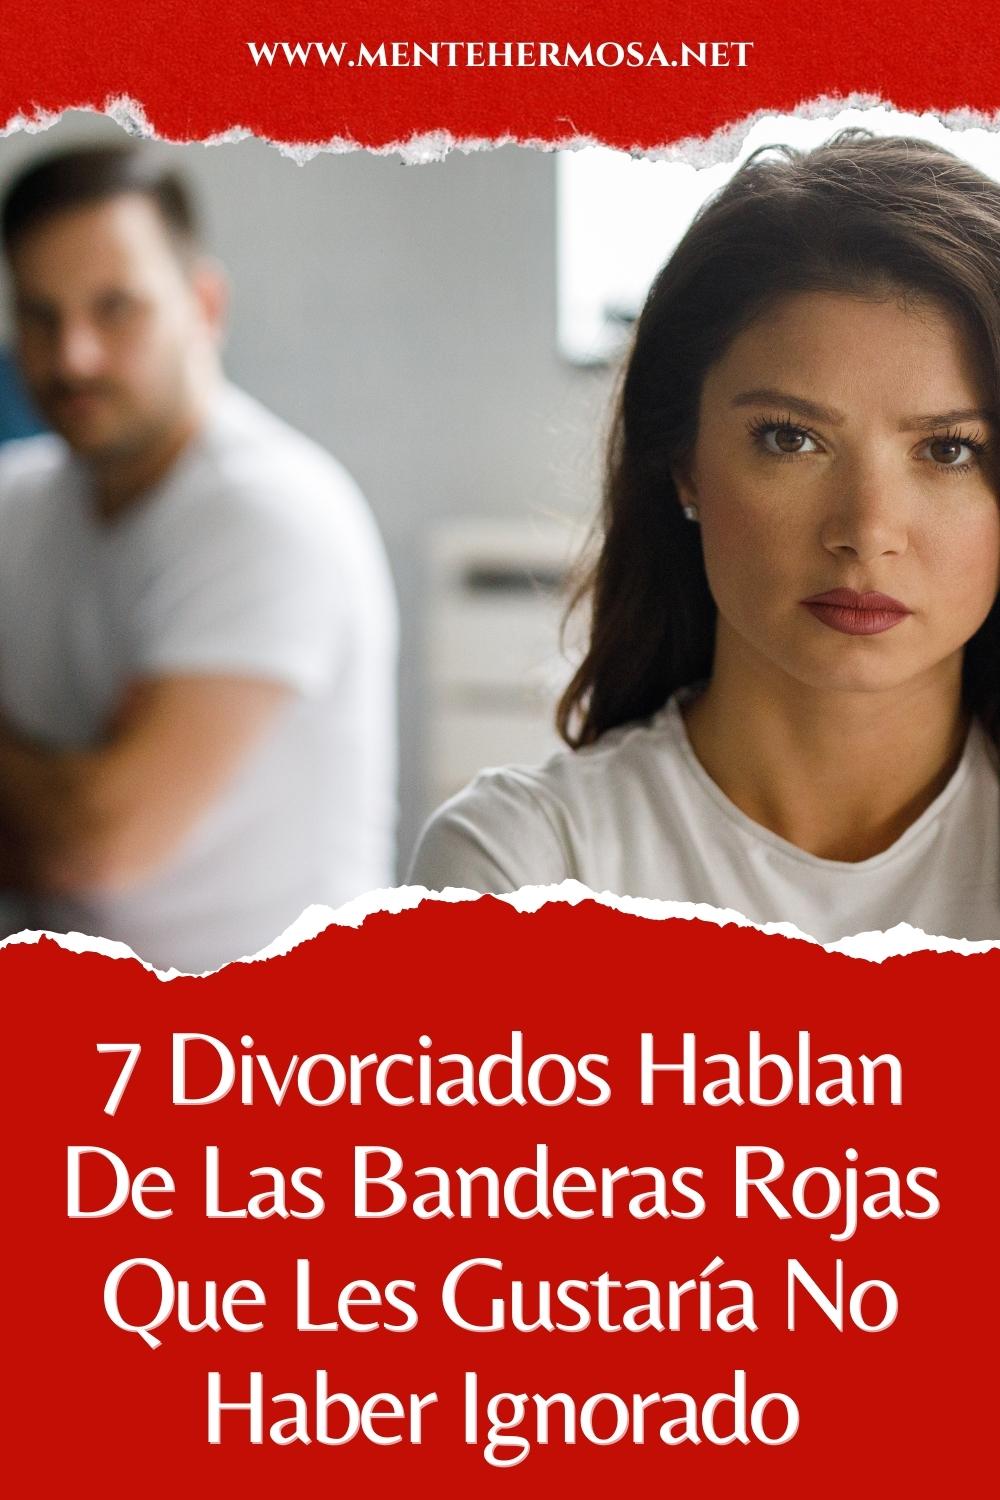 7 Divorciados Hablan De Las Banderas Rojas Que Les Gustaría No Haber Ignorado